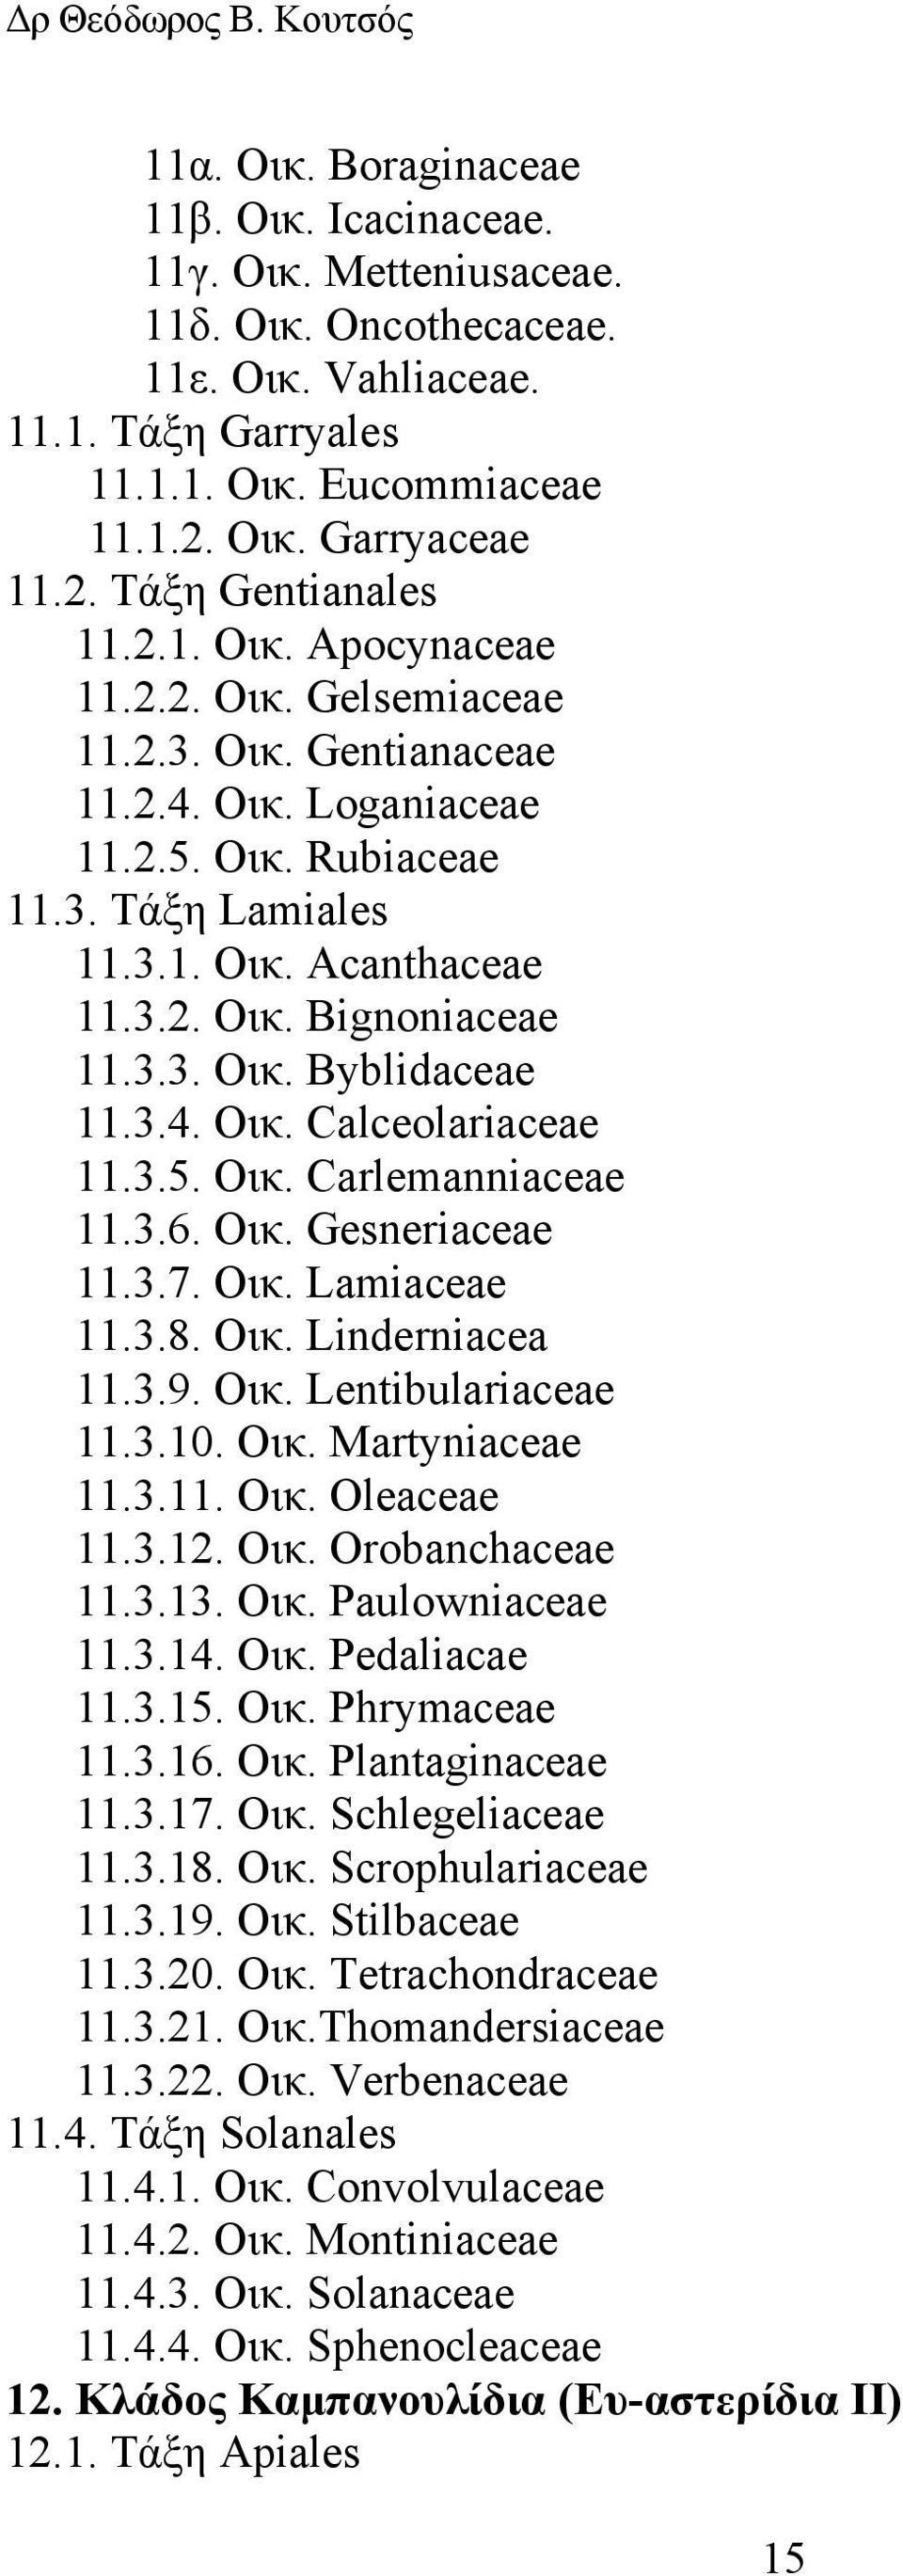 3.4. Οικ. Calceolariaceae 11.3.5. Οικ. Carlemanniaceae 11.3.6. Οικ. Gesneriaceae 11.3.7. Οικ. Lamiaceae 11.3.8. Οικ. Linderniacea 11.3.9. Οικ. Lentibulariaceae 11.3.10. Οικ. Martyniaceae 11.3.11. Οικ. Oleaceae 11.